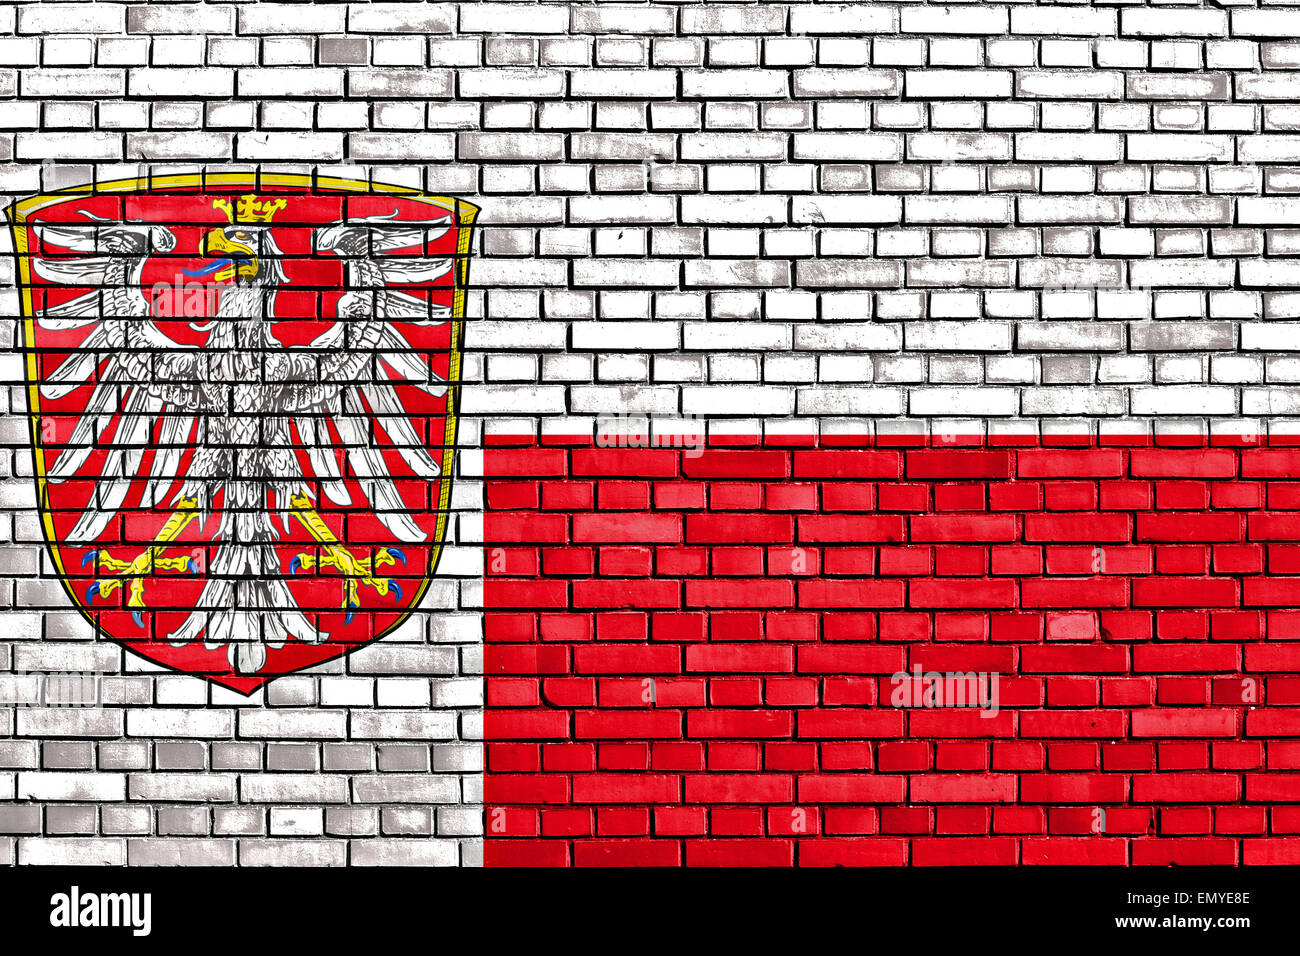 Pavillon de l'Frankfurt am Main peint sur mur de brique Banque D'Images